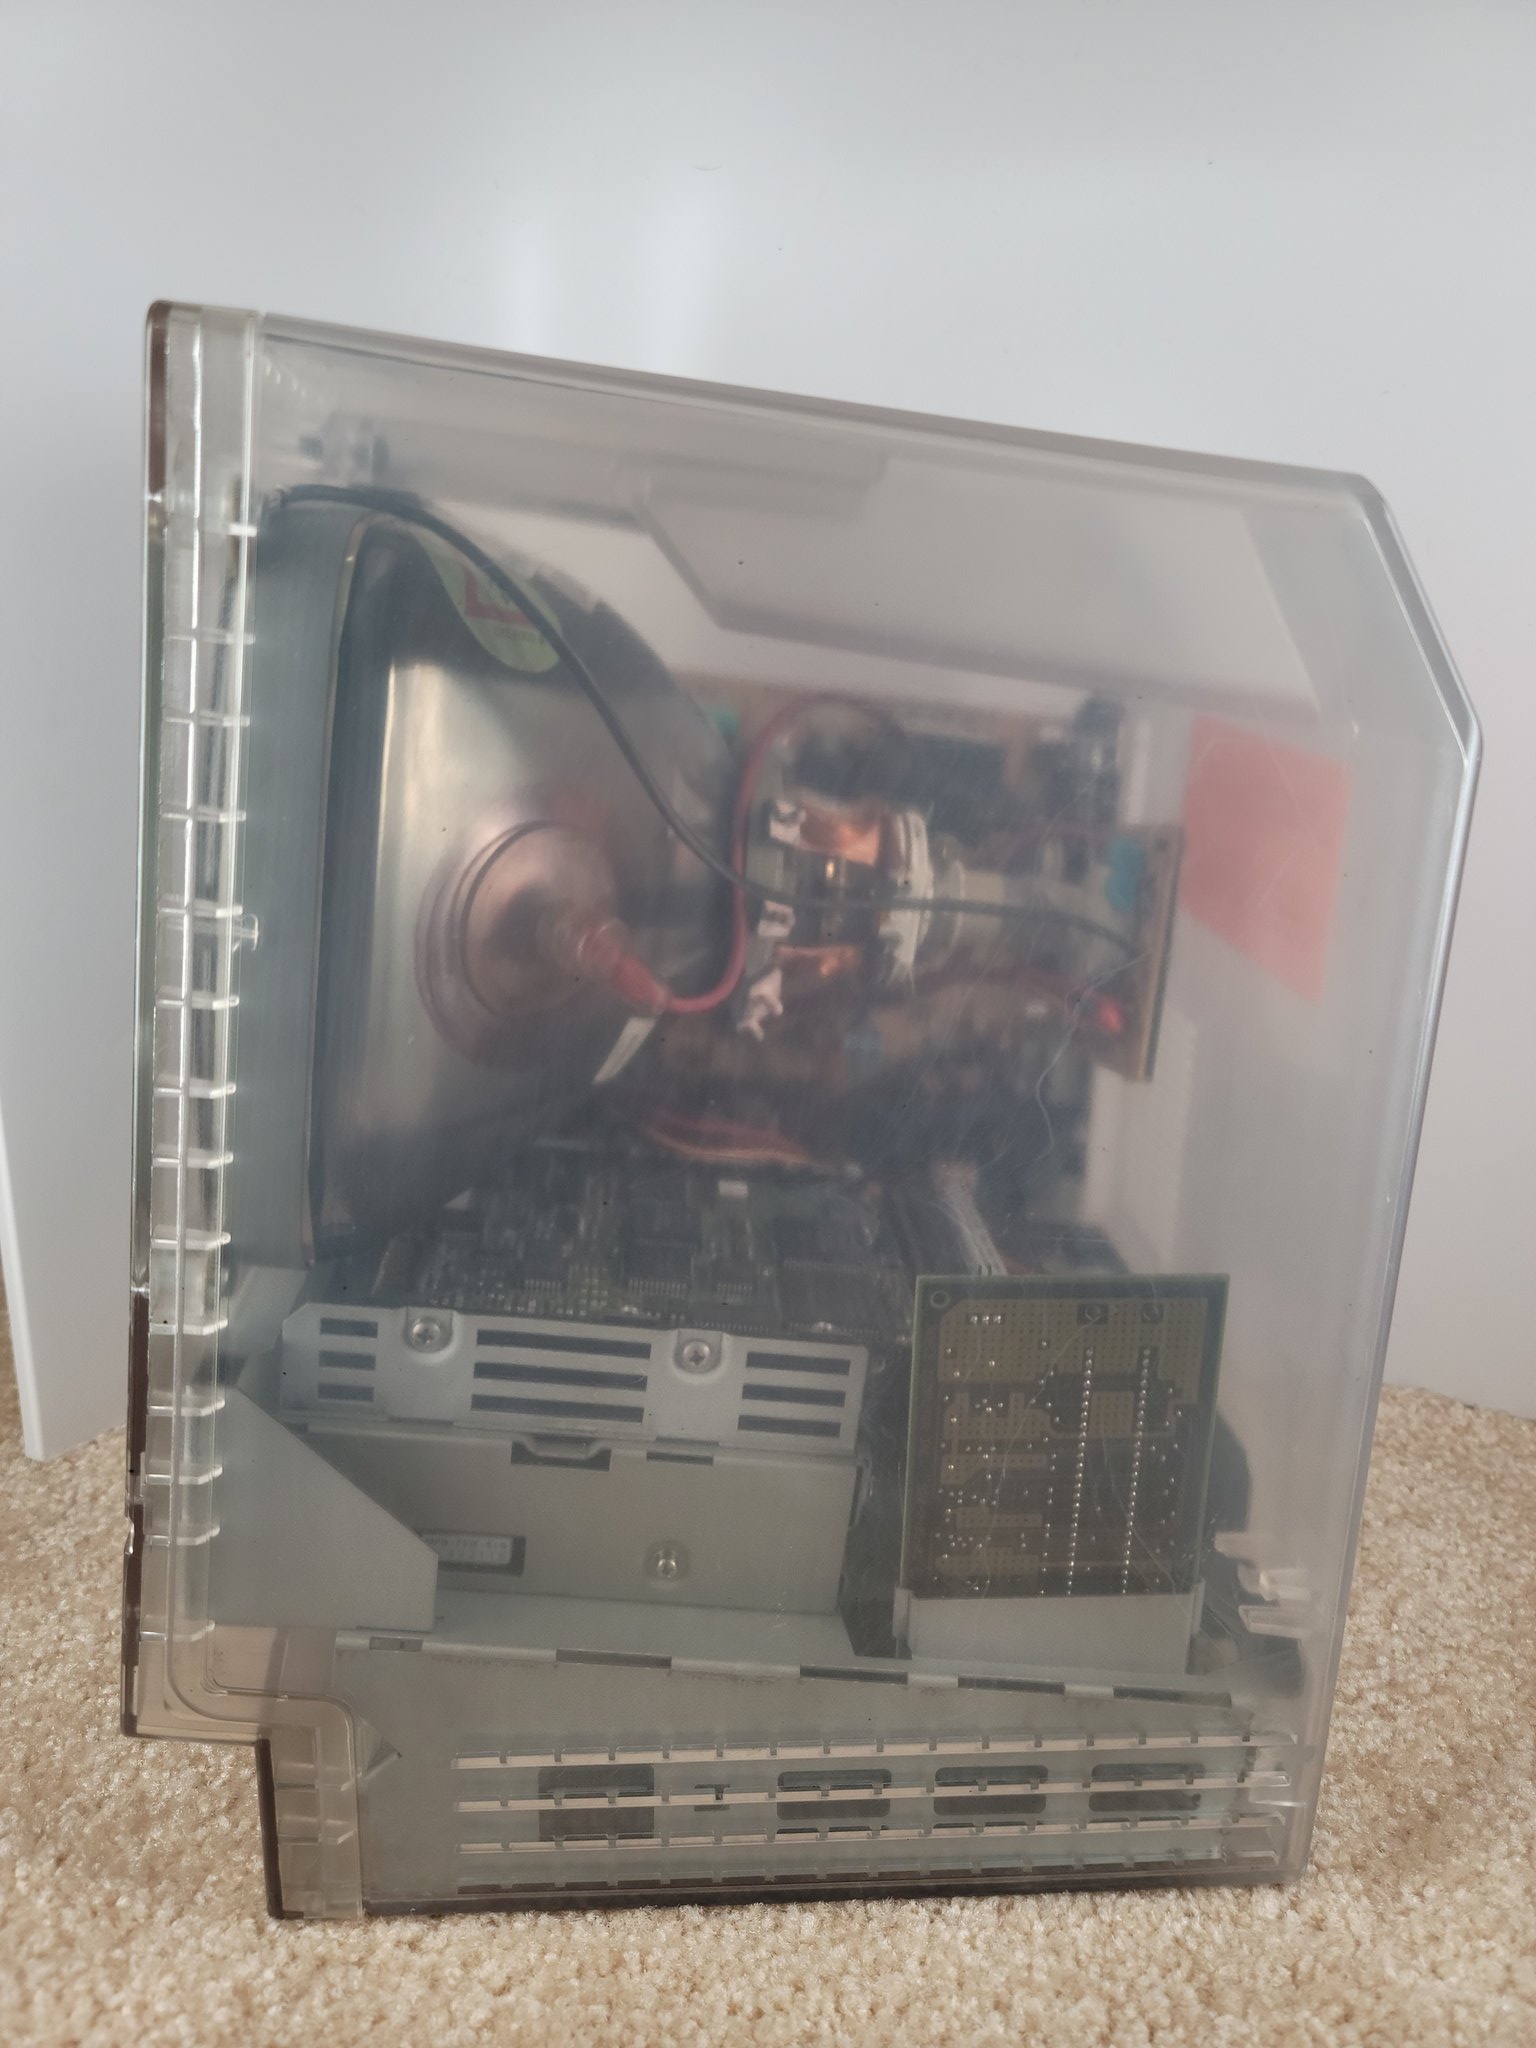 Prototipo de Macintosh original con carcasa transparente